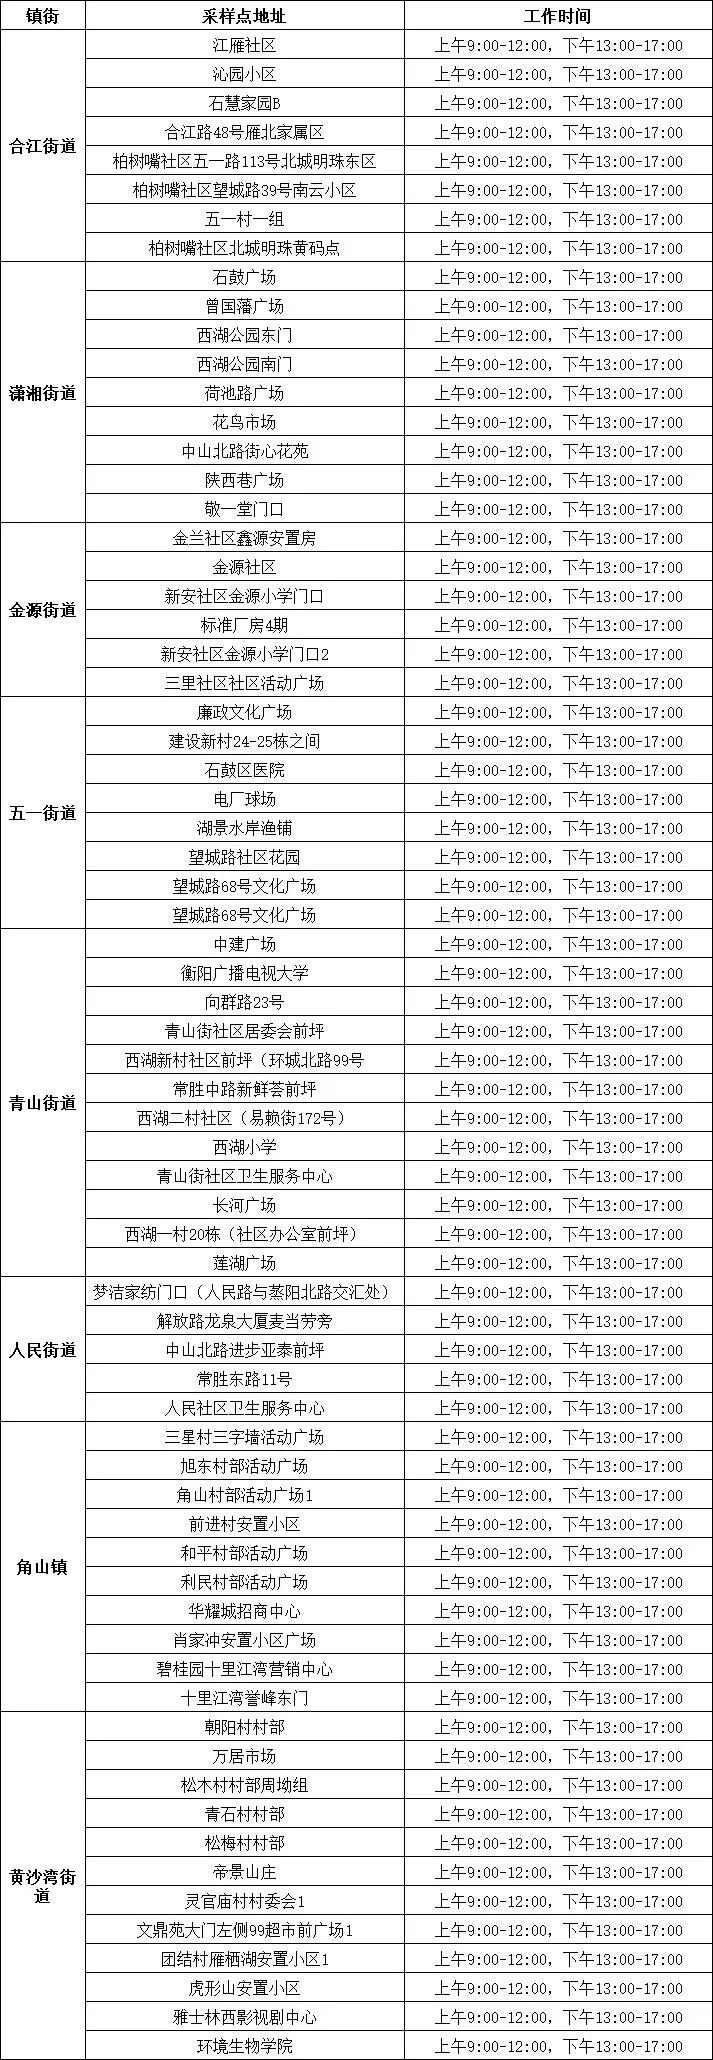 衡山县关于开展城区和永和乡区域全员免费核酸检测的通告